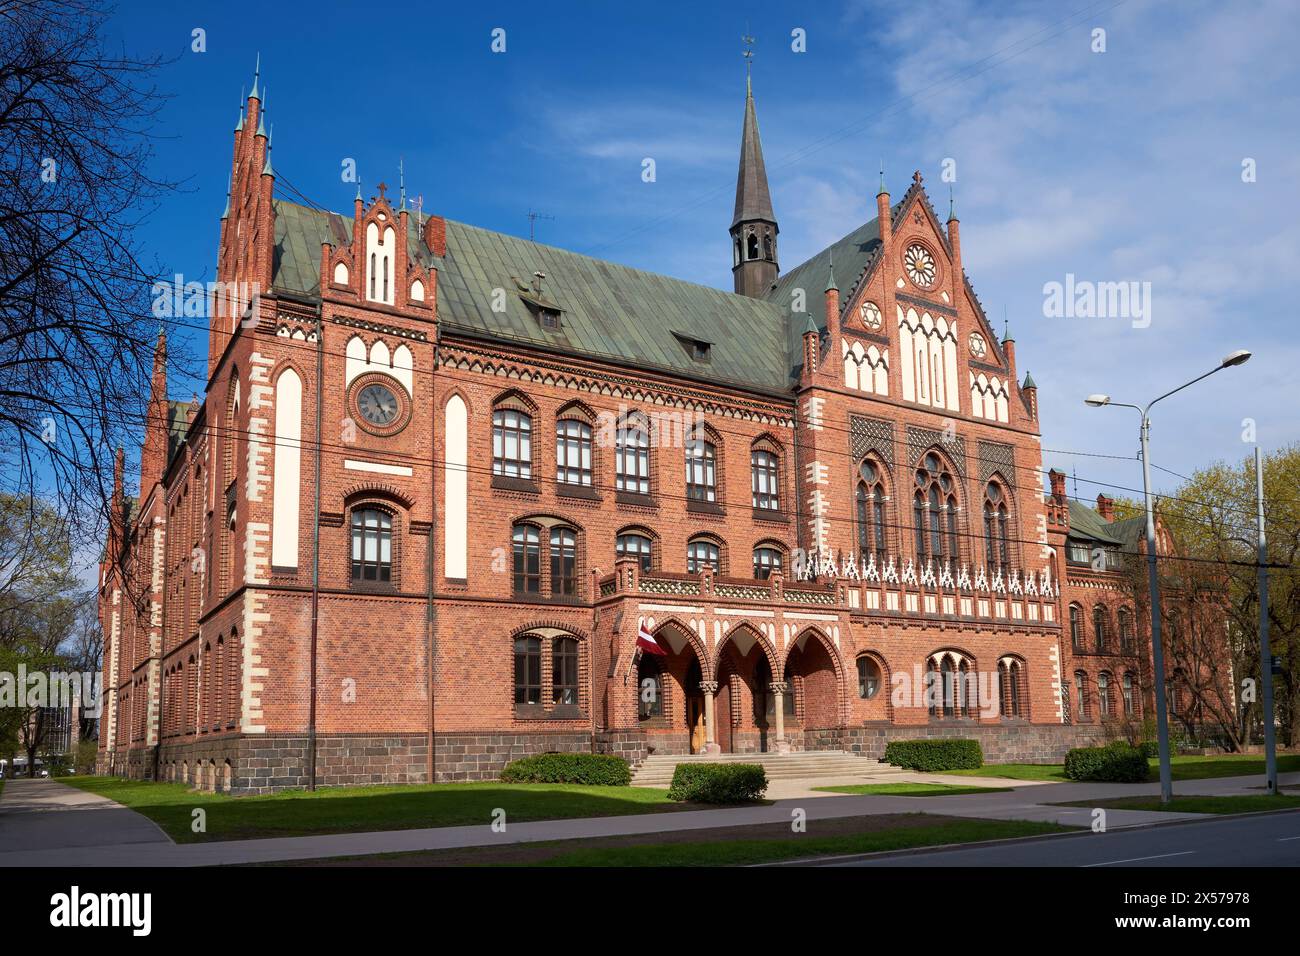 Attrazioni turistiche antiche nella città di riga - antico edificio retrò dell'Accademia delle arti, riga, Lettonia. Foto Stock